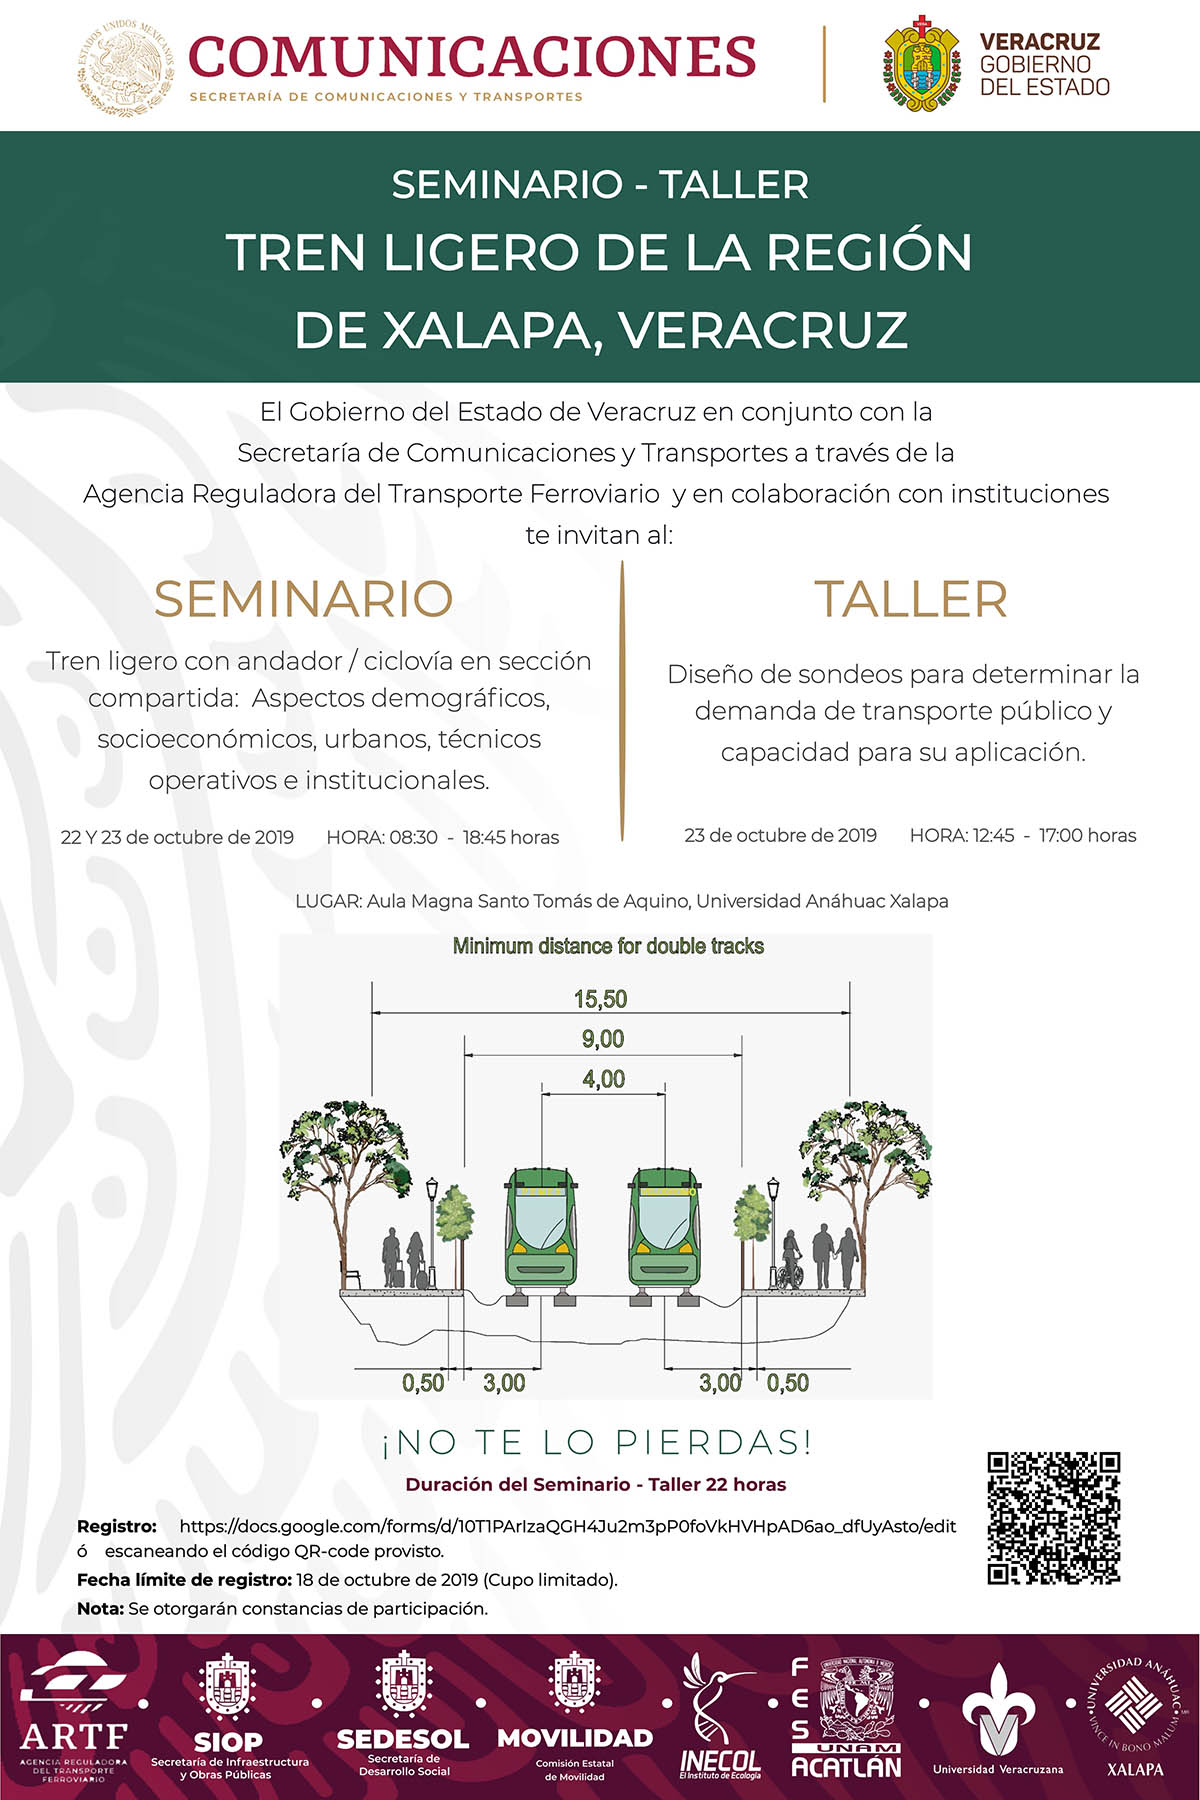 Seminario-Taller Tren Ligero de la Región de Xalapa, Veracruz